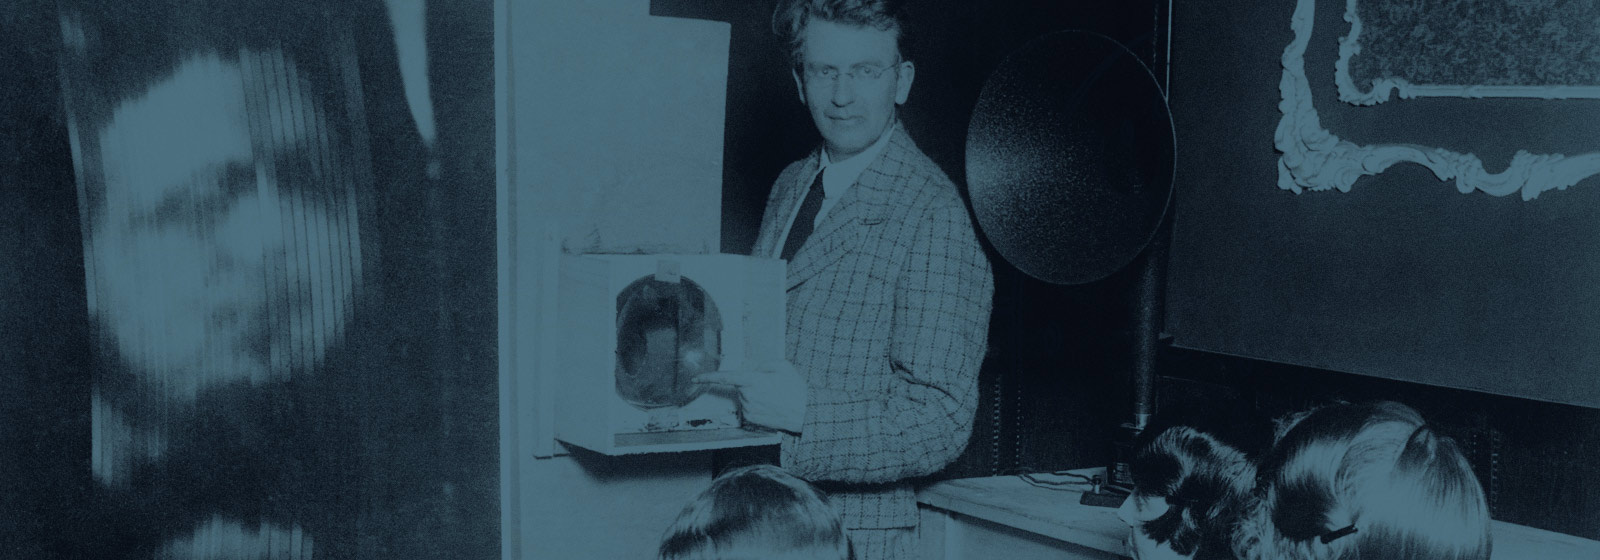 Meet the Makers - John Logie Baird